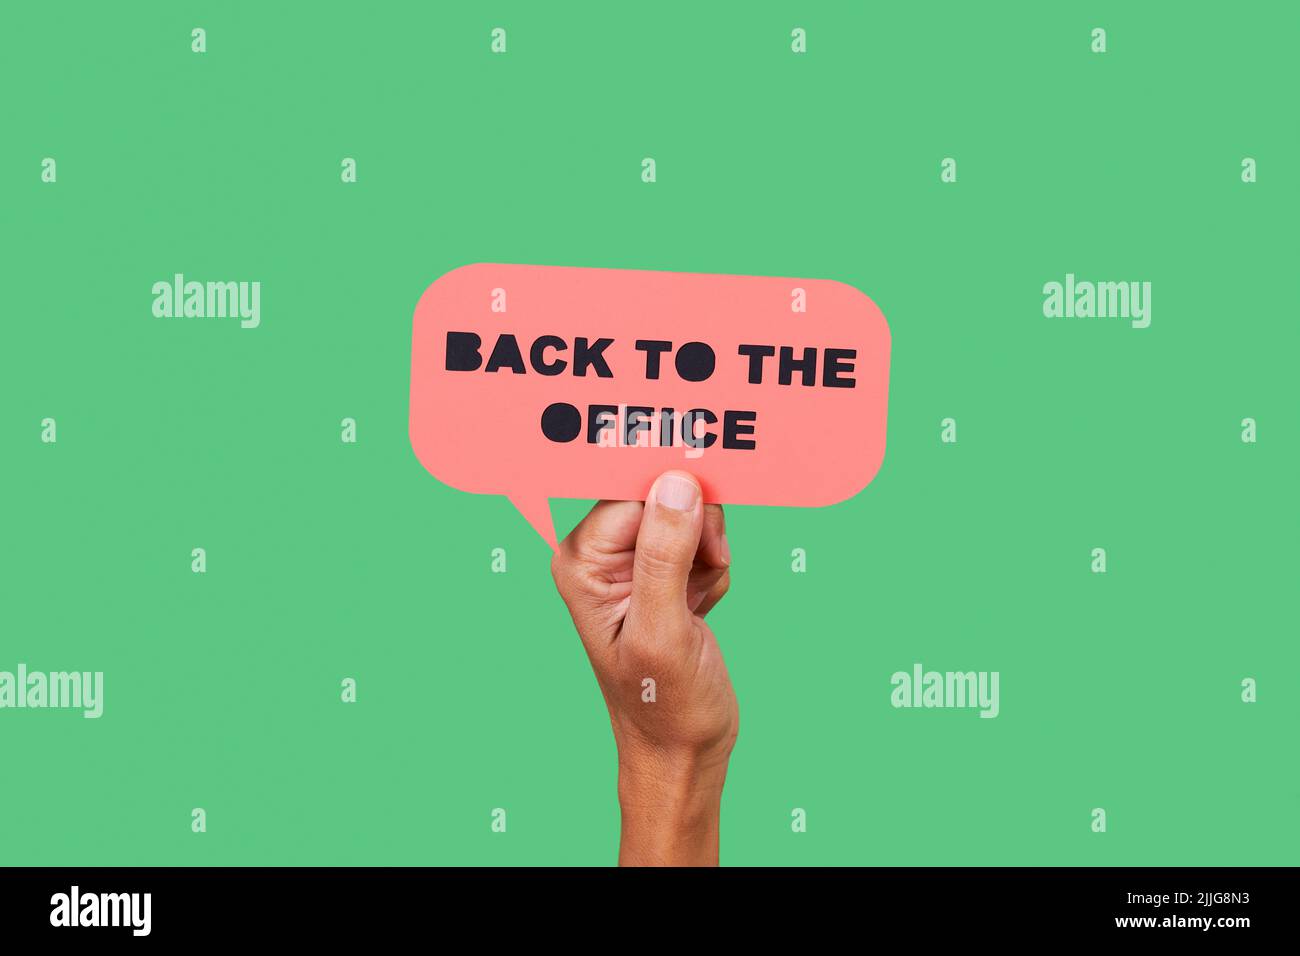 primer plano de la mano de un hombre sosteniendo una burbuja de discurso de papel rosa con el texto de vuelta a la oficina en ella, sobre un fondo verde Foto de stock